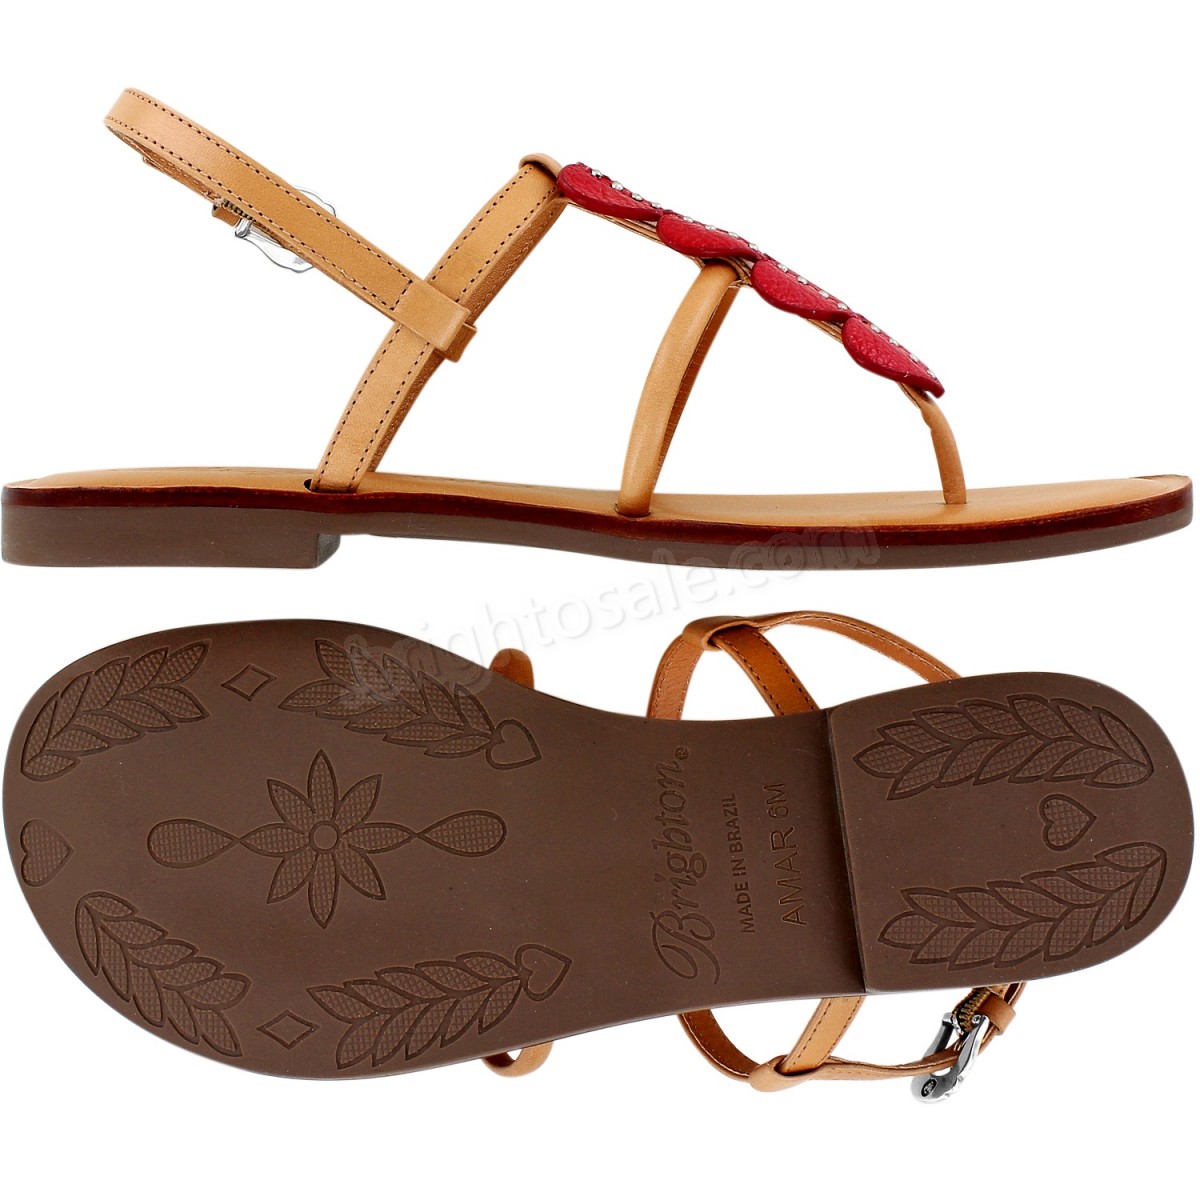 Brighton Collectibles & Online Discount Nassau Sandals - -2